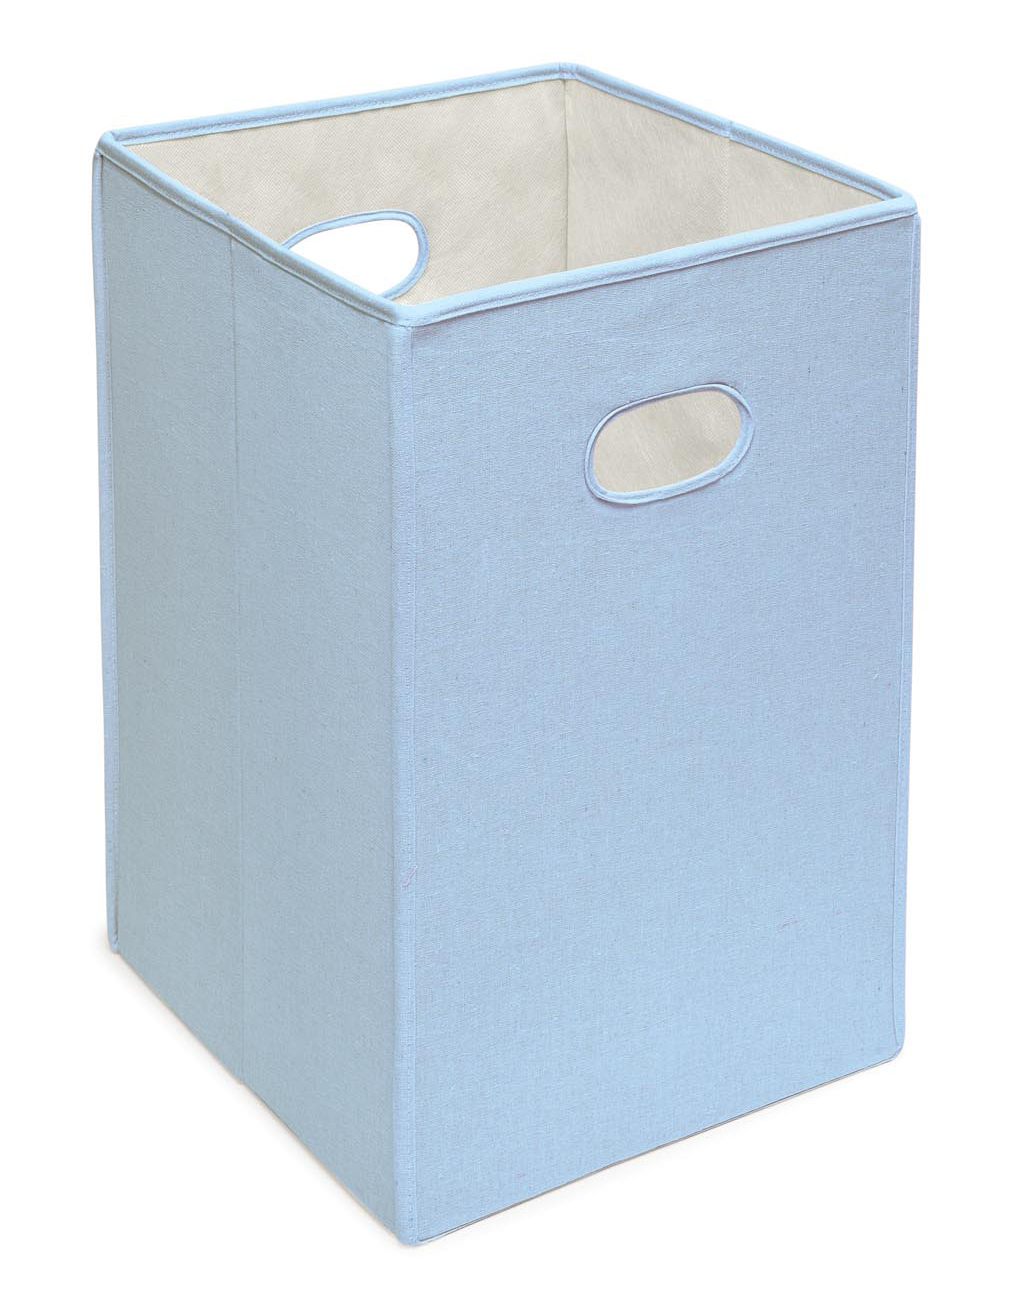 Folding Hamper Storage Bin - Blue